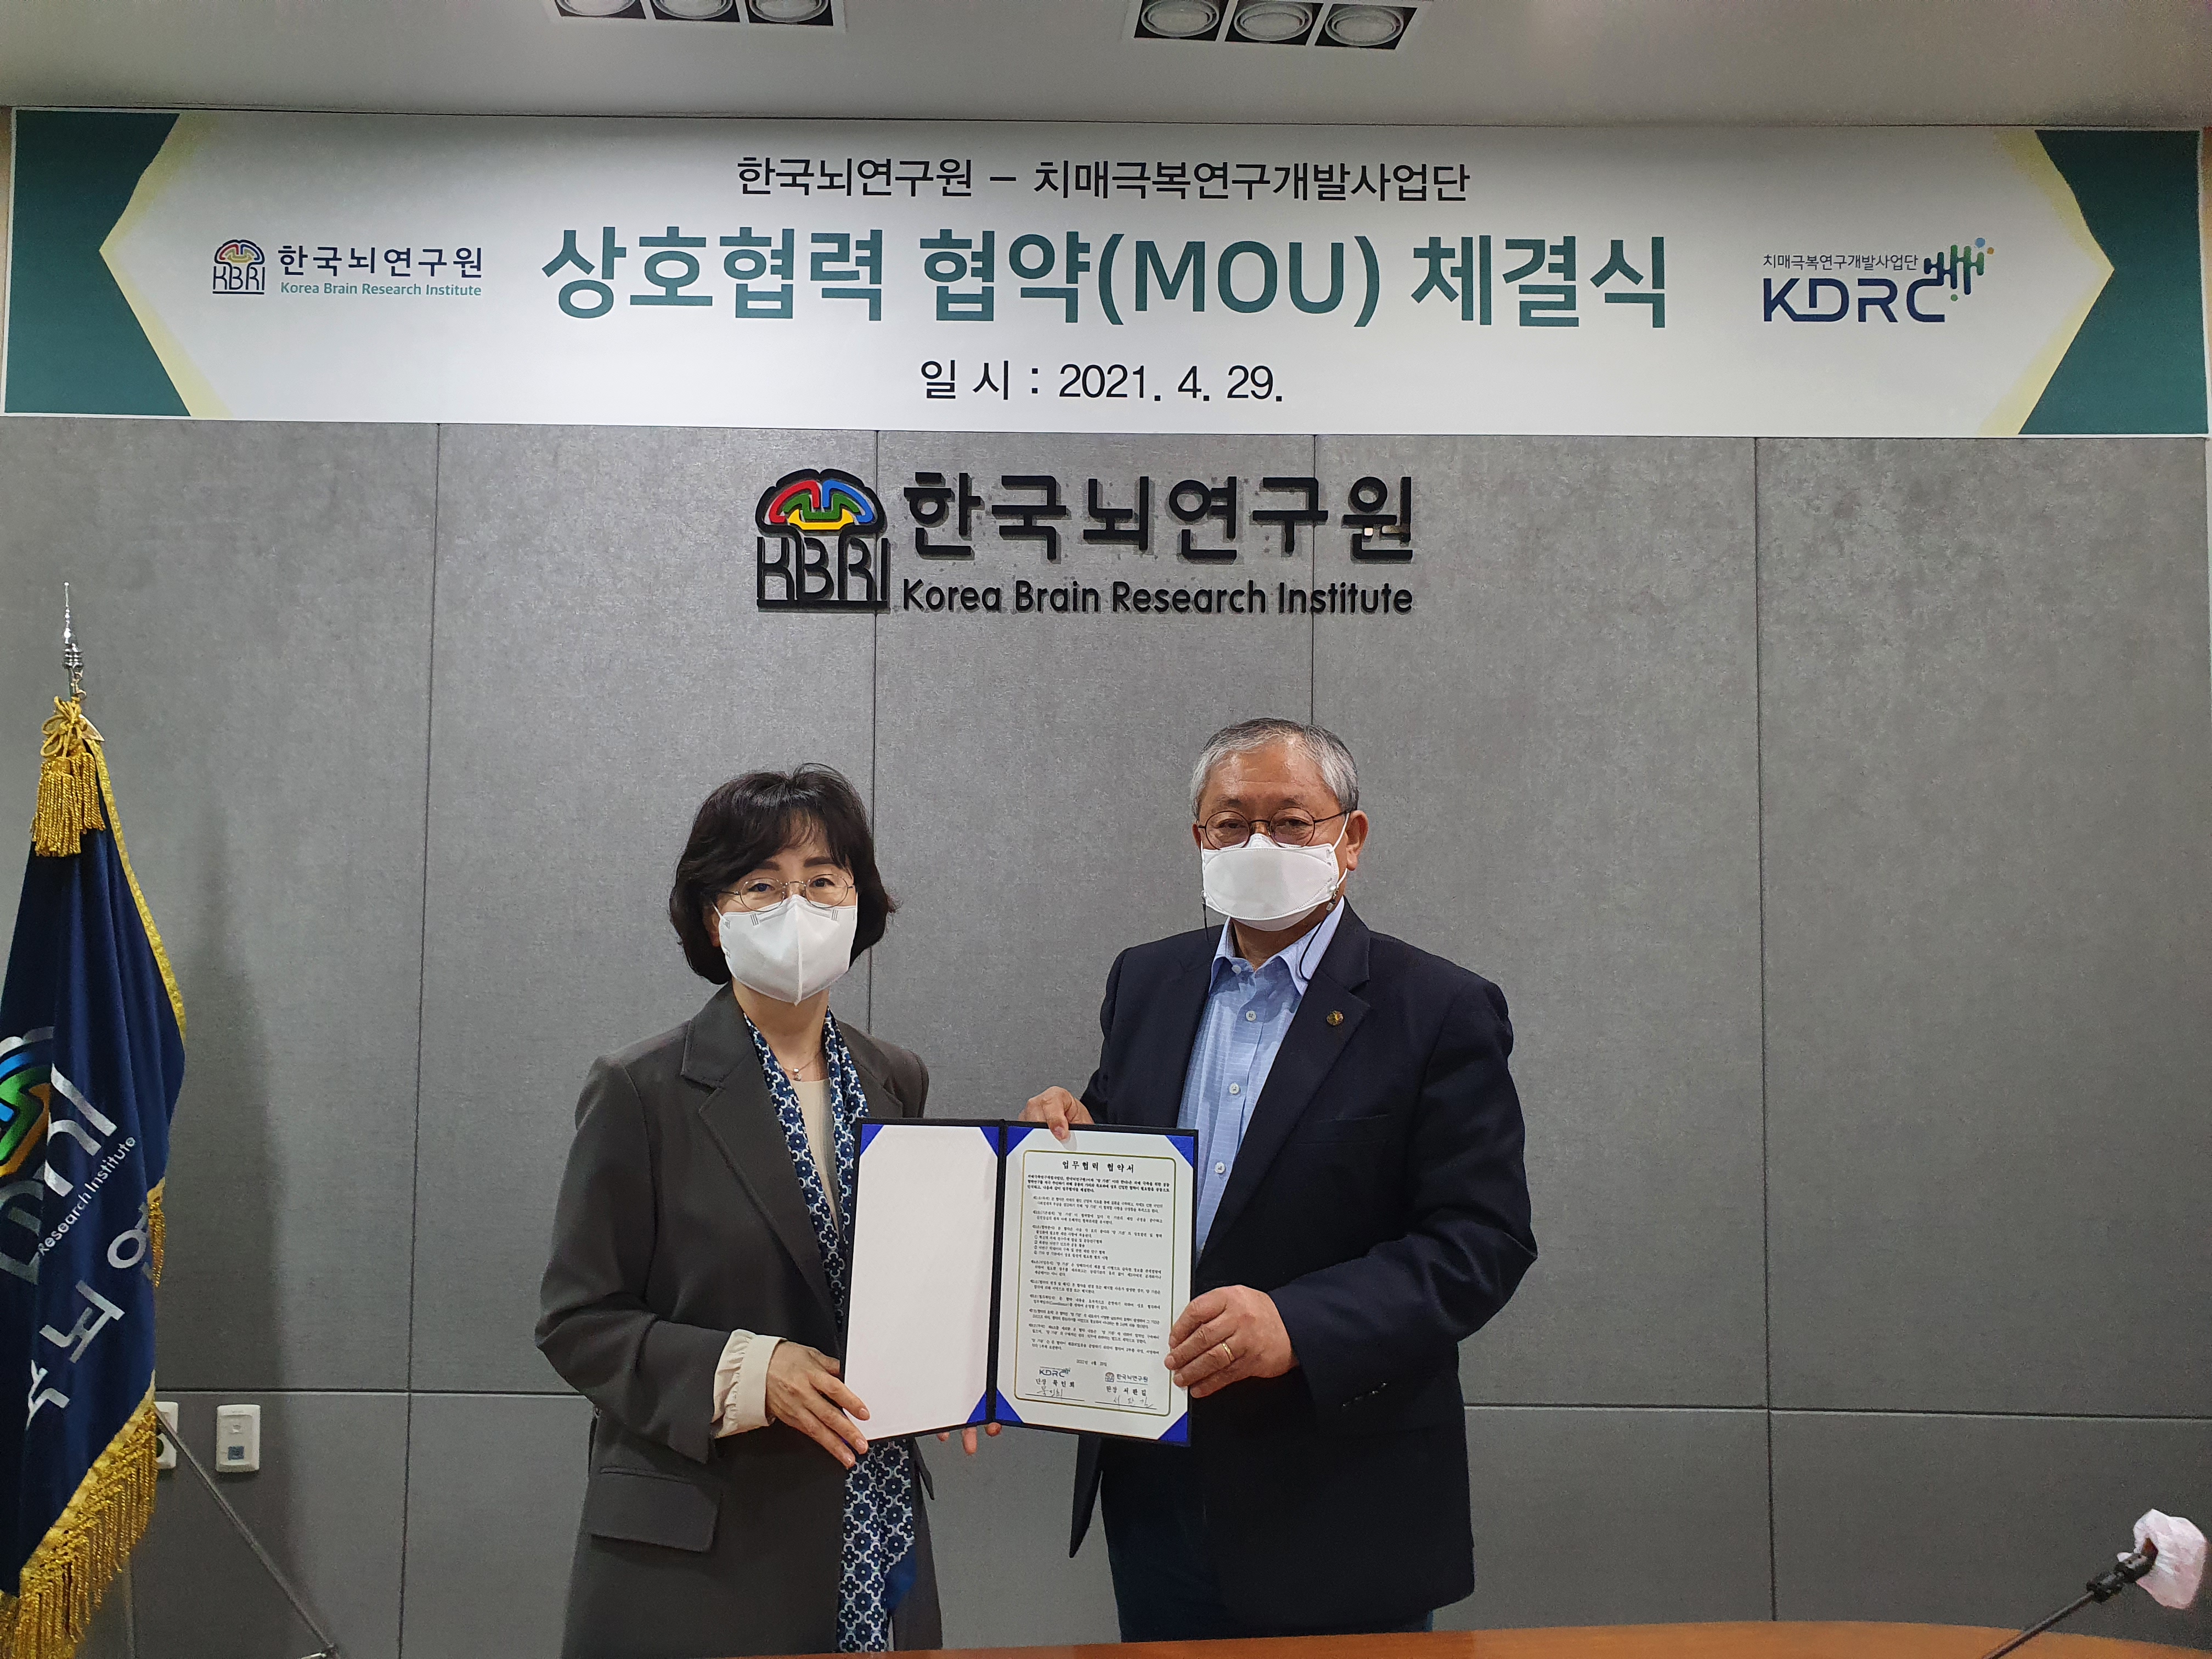 한국뇌연구원, 치매극복연구개발사업단과 공동 연구 상호협력 협약(MOU) 체결 이미지 1